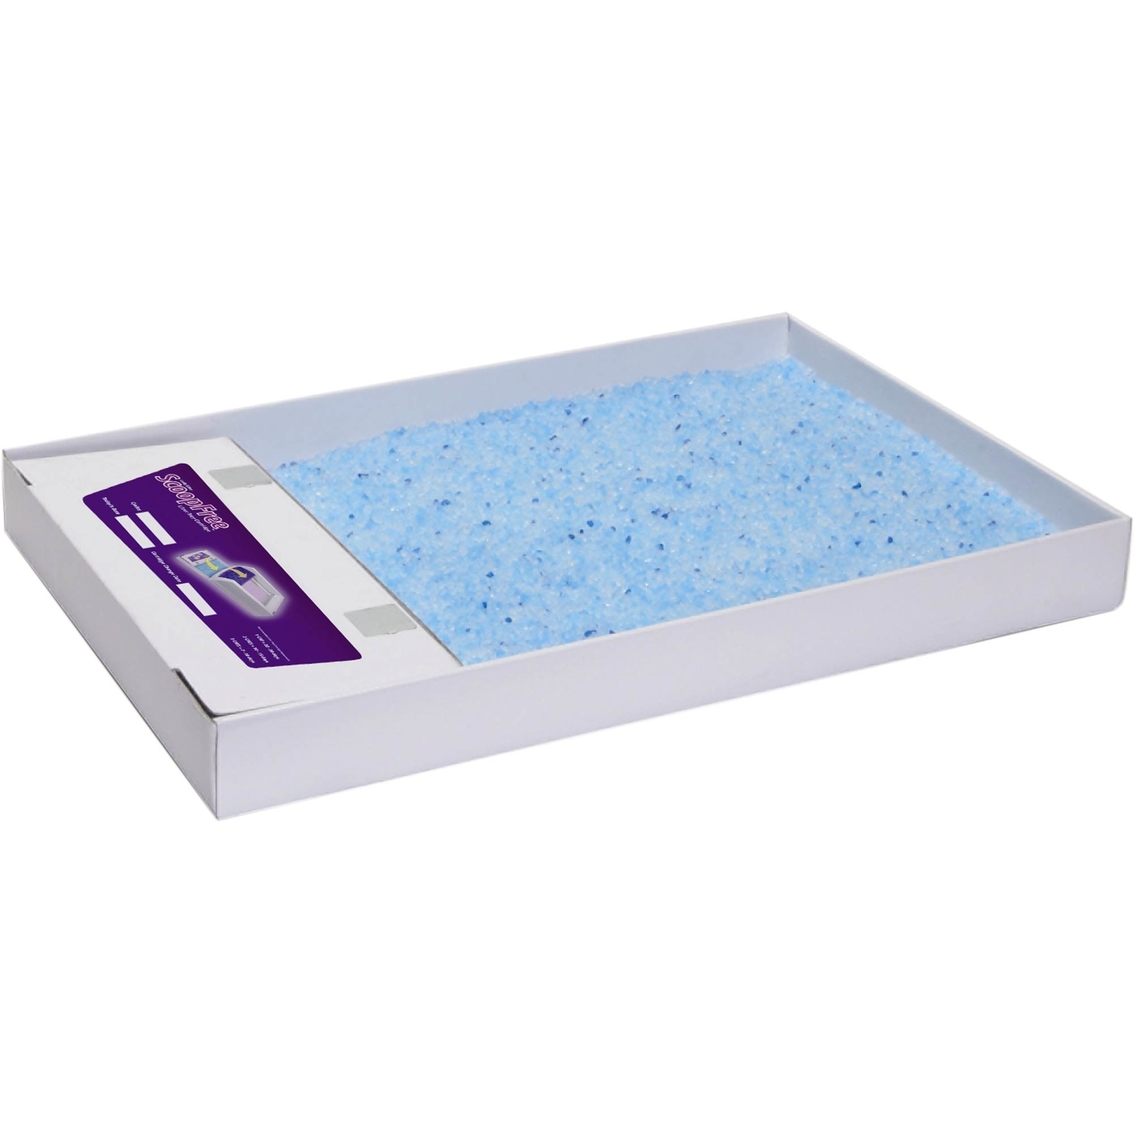 PetSafe ScoopFree Litter Tray Blue Single Pack - Image 2 of 2